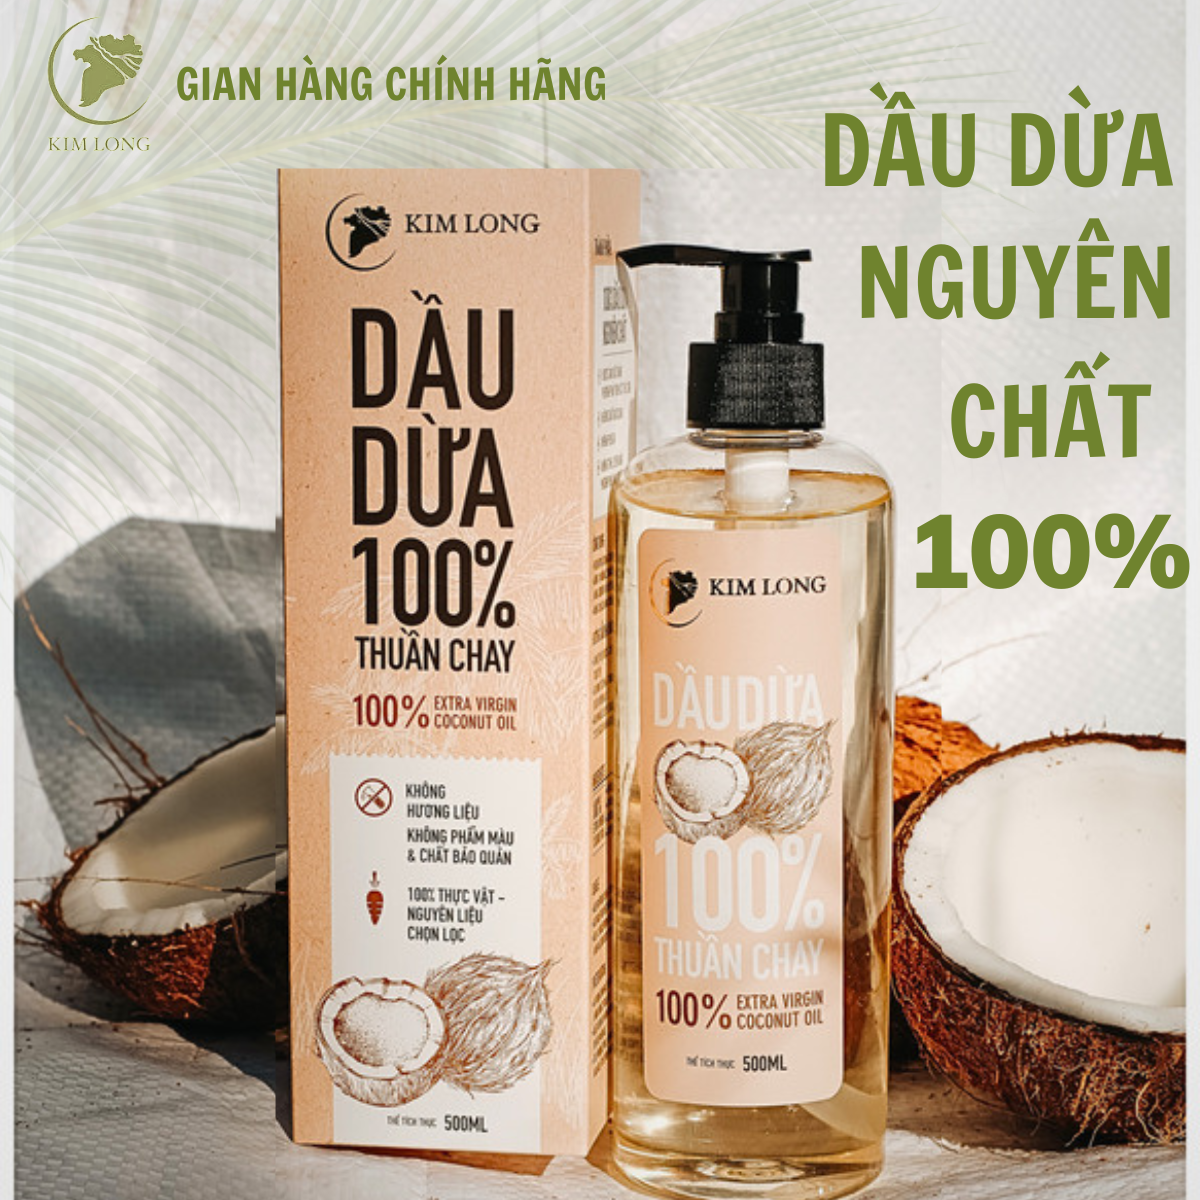 Dầu Dừa Kim Long nguyên chất 100% - An toàn cho mẹ bầu và trẻ sơ sinh - Hỗ trợ dưỡng da, dưỡng tóc, dưỡng môi, ngừa rạn da - Organic extra virgin coconut oil